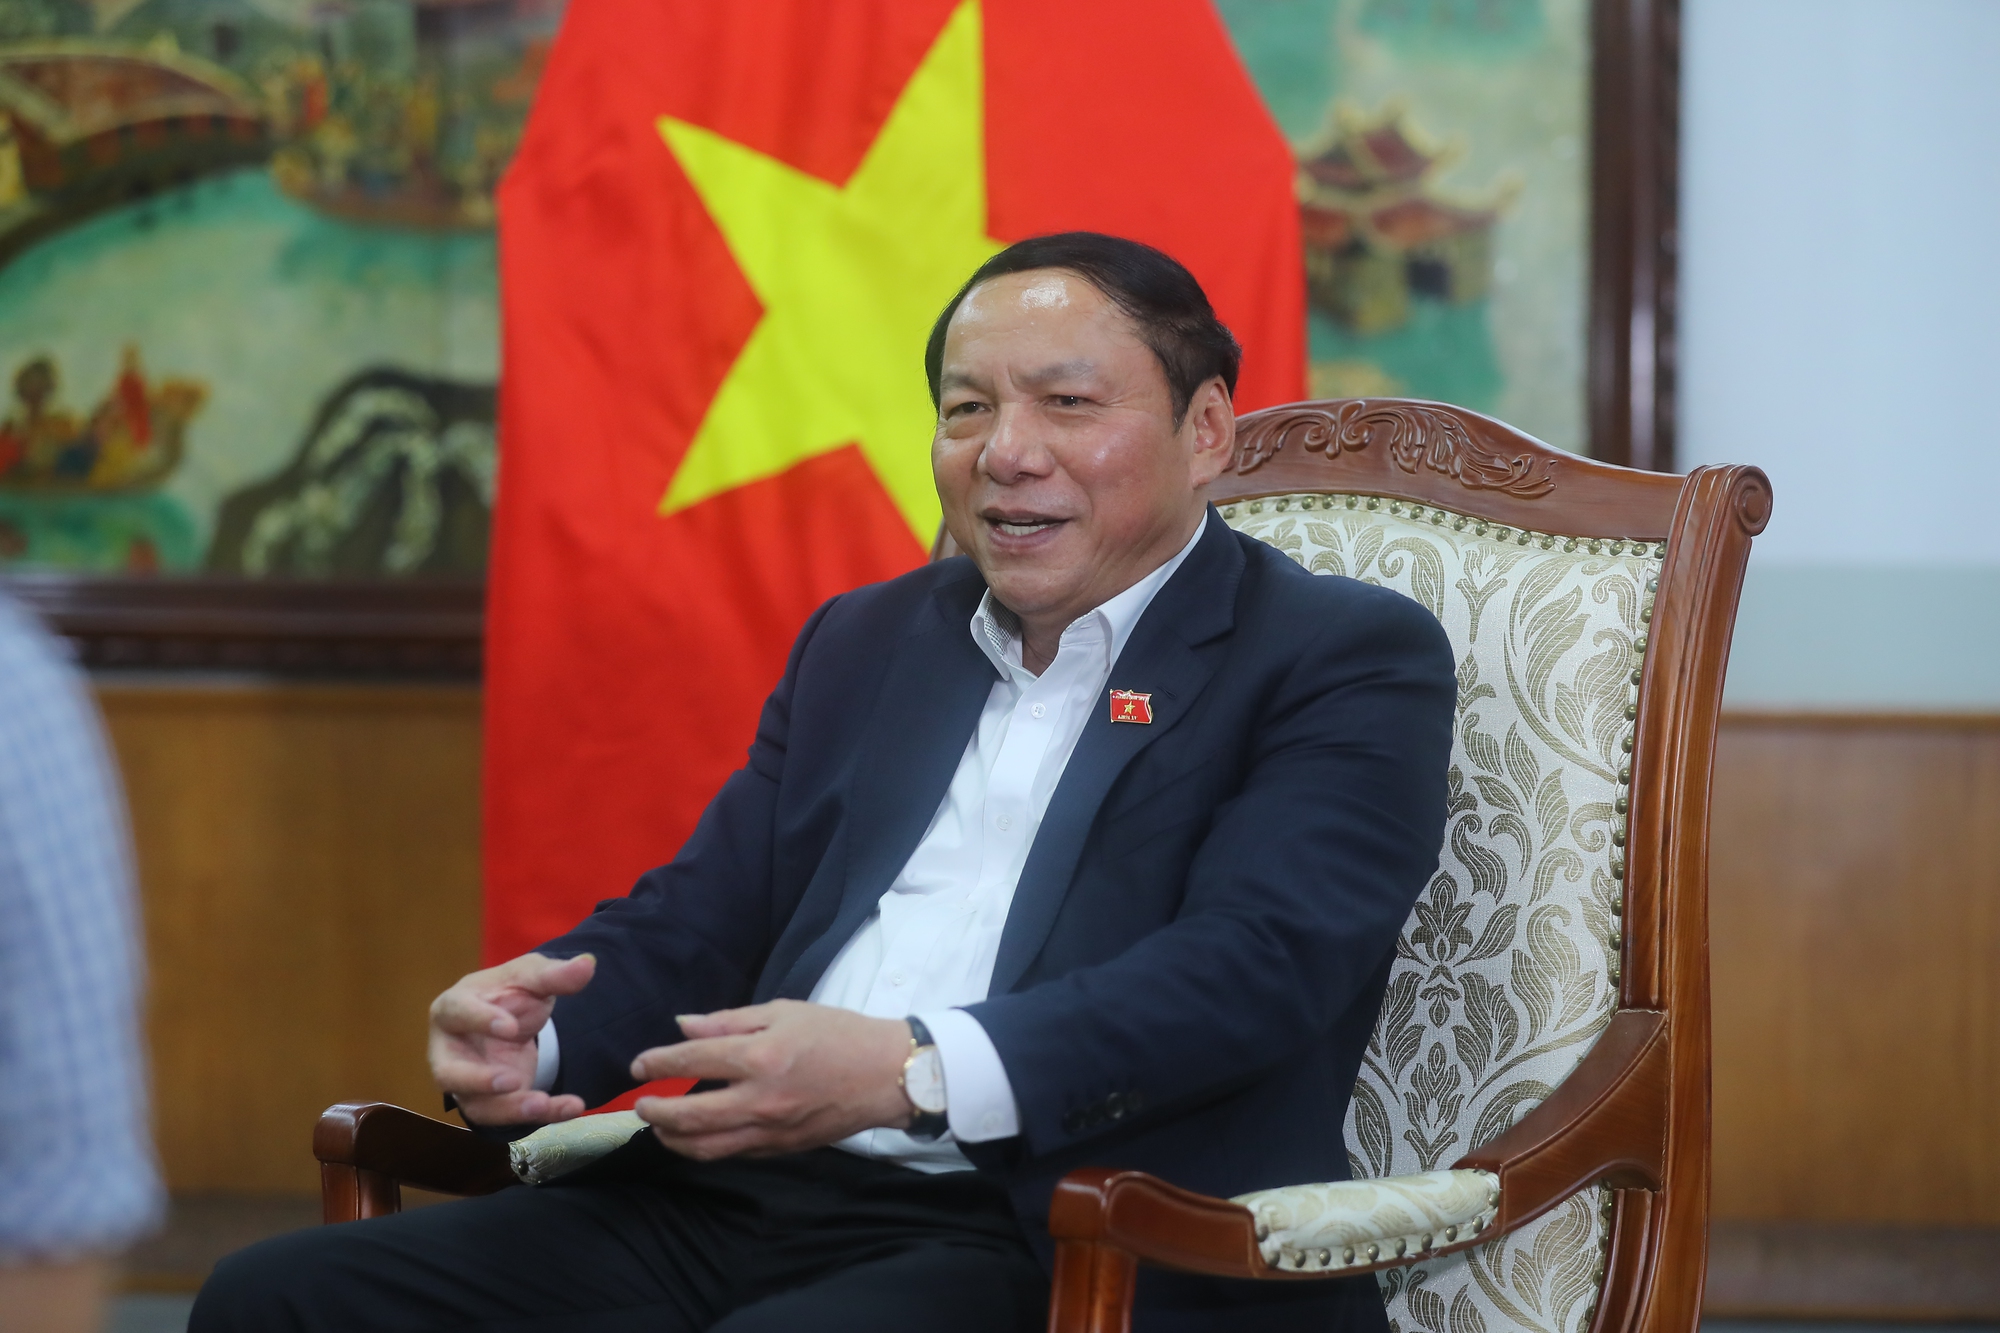 Bộ trưởng Nguyễn Văn Hùng: Cầu thị, tiếp thu mọi ý kiến để nỗ lực hoàn thiện dự thảo Chương trình MTQG về phát triển văn hóa - Ảnh 1.